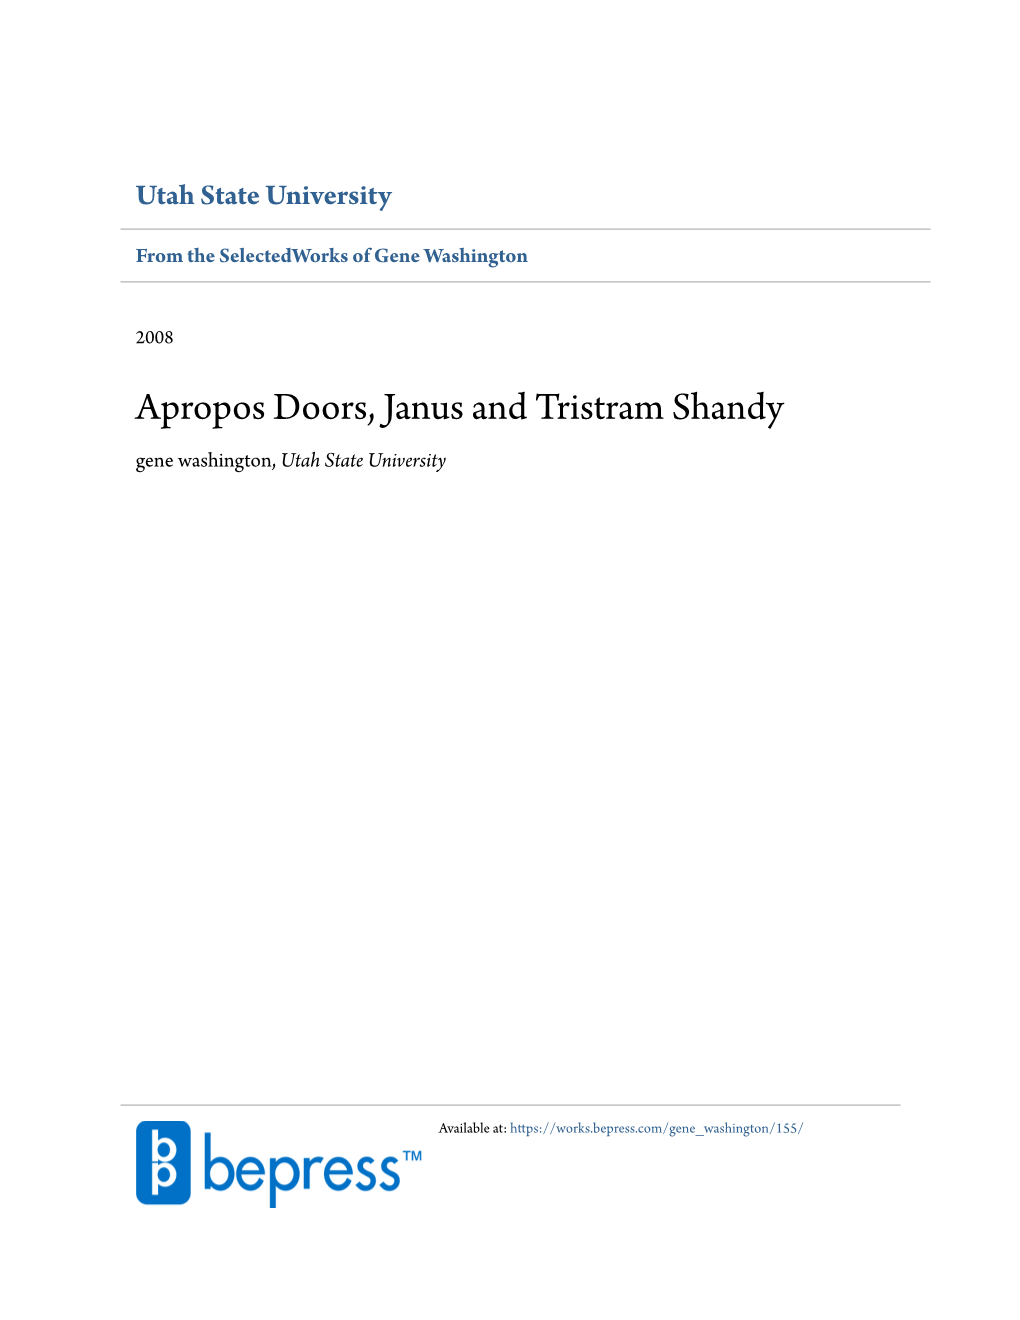 Apropos Doors, Janus and Tristram Shandy Gene Washington, Utah State University